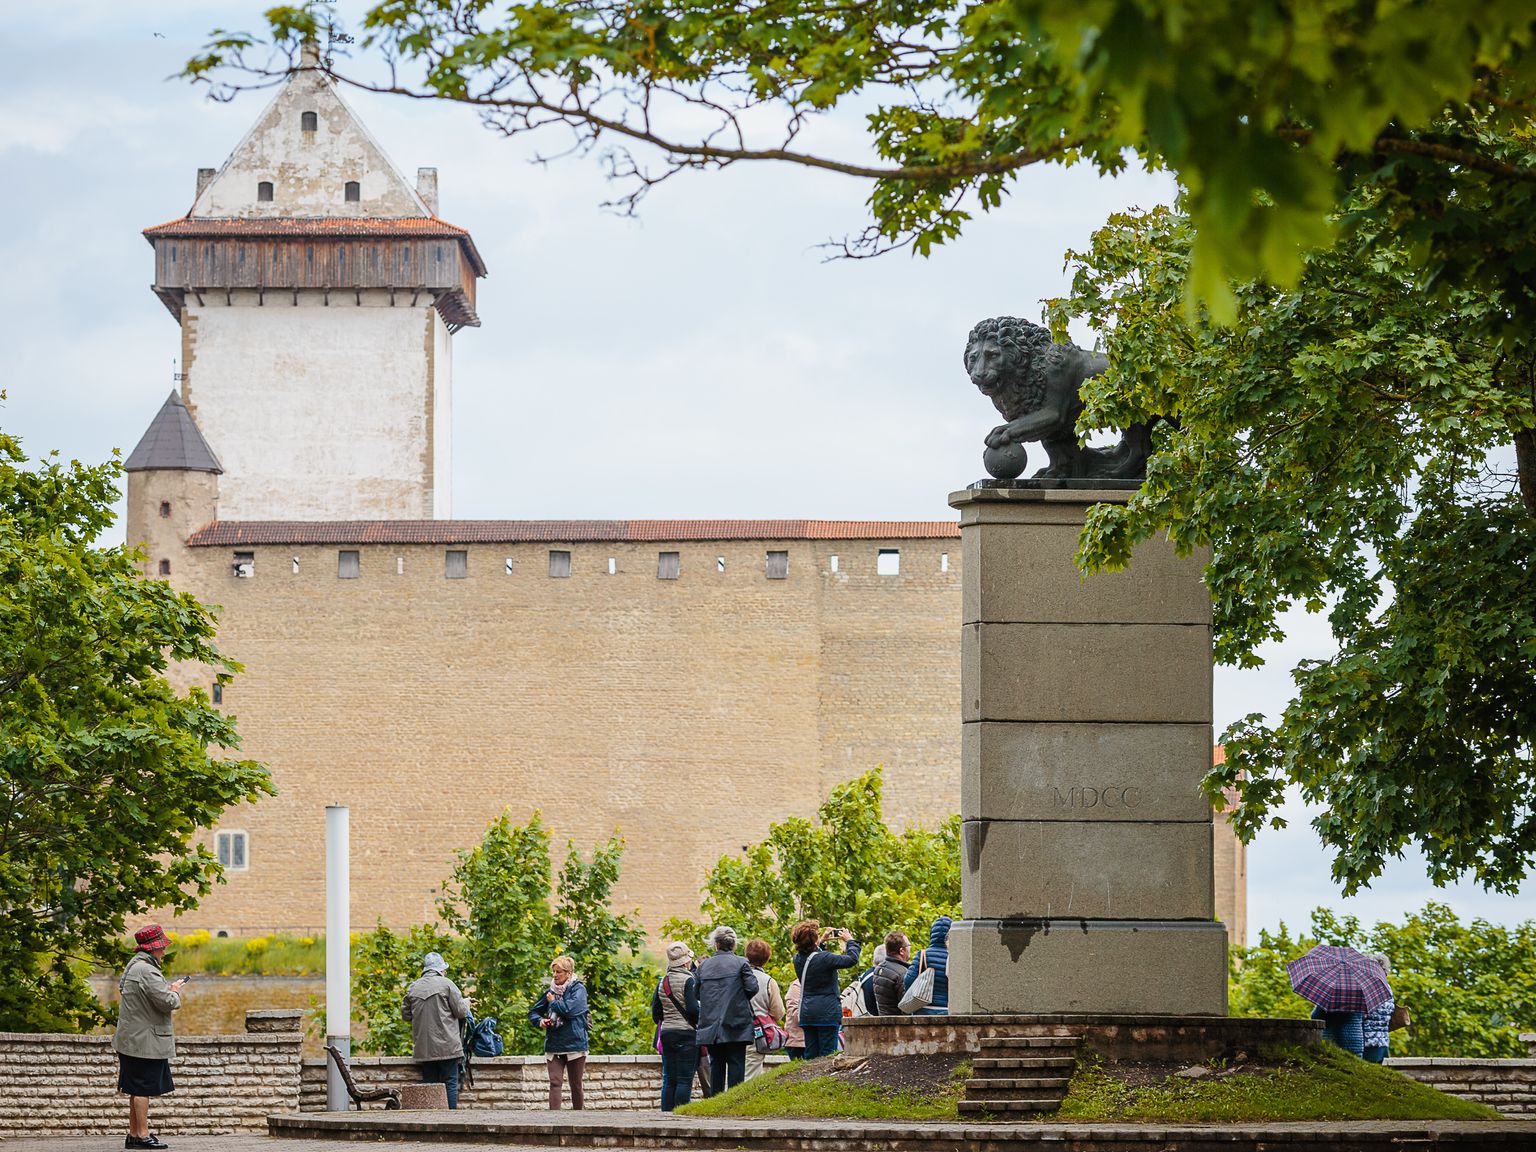 Külastusuuringust tuli välja, et esimesena seostub inimestel Ida-Virumaaga Narva linn. Küsitletud mainisid, et Narva on nagu Ida-Virumaa pealinn, sest see on oma ajaloo poolest tähtis ja ka tegevusi on seal rohkem.